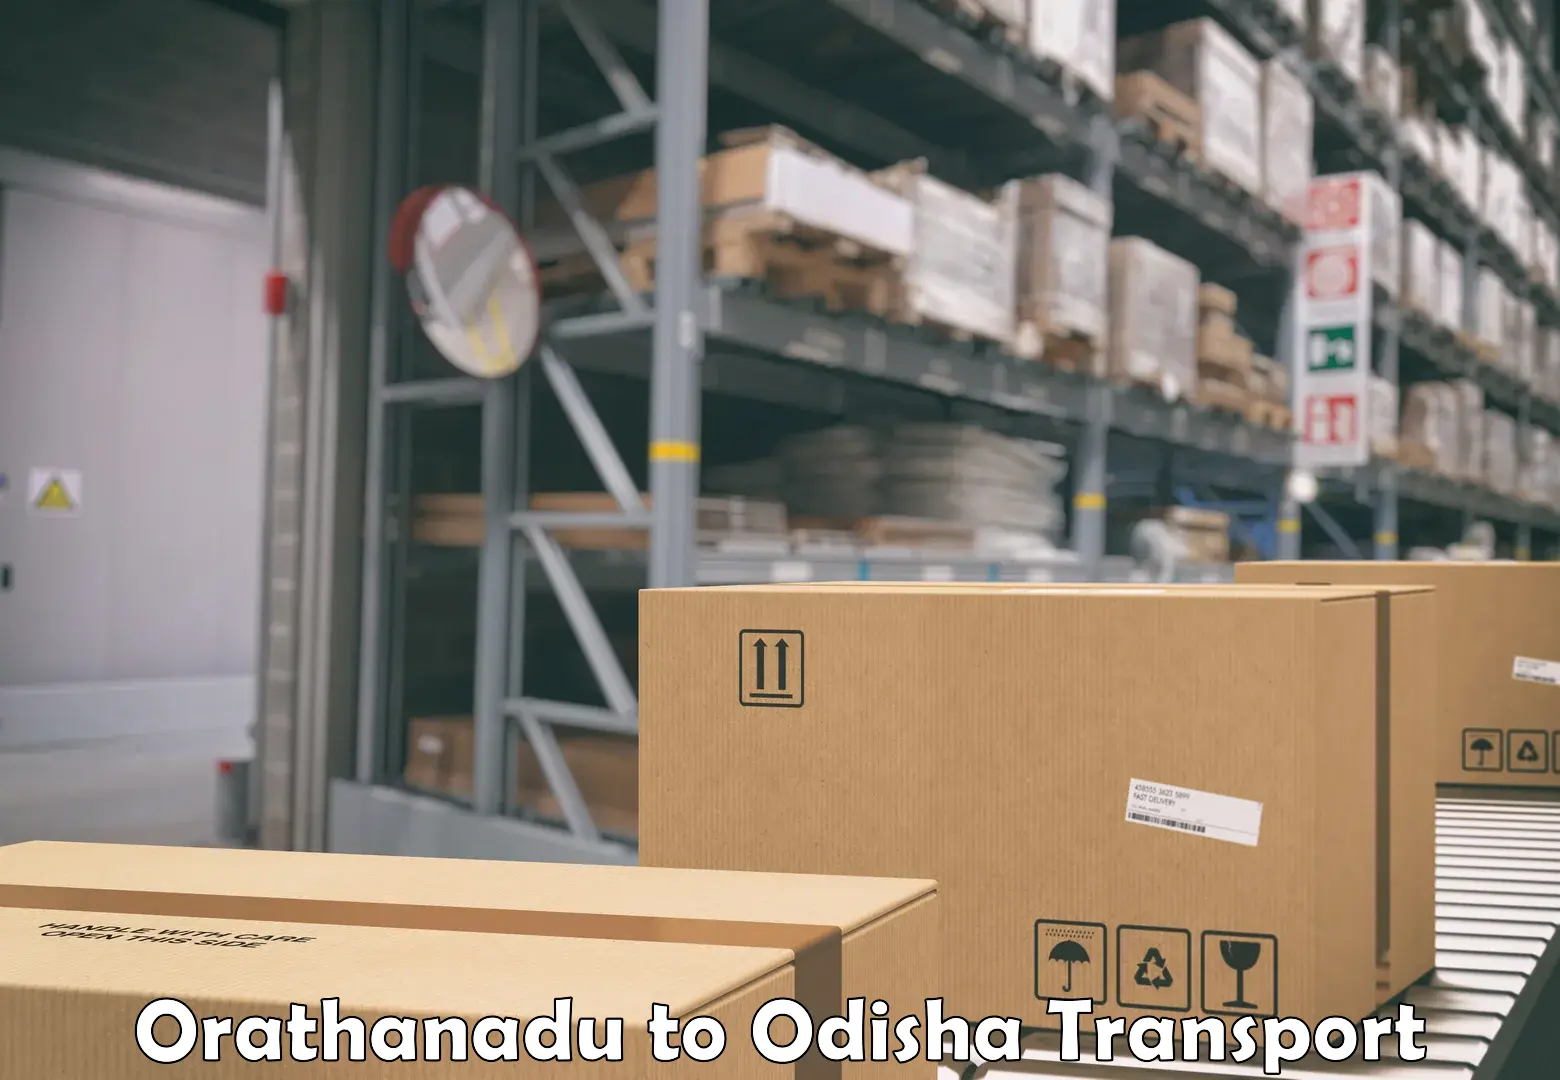 Delivery service Orathanadu to Paralakhemundi